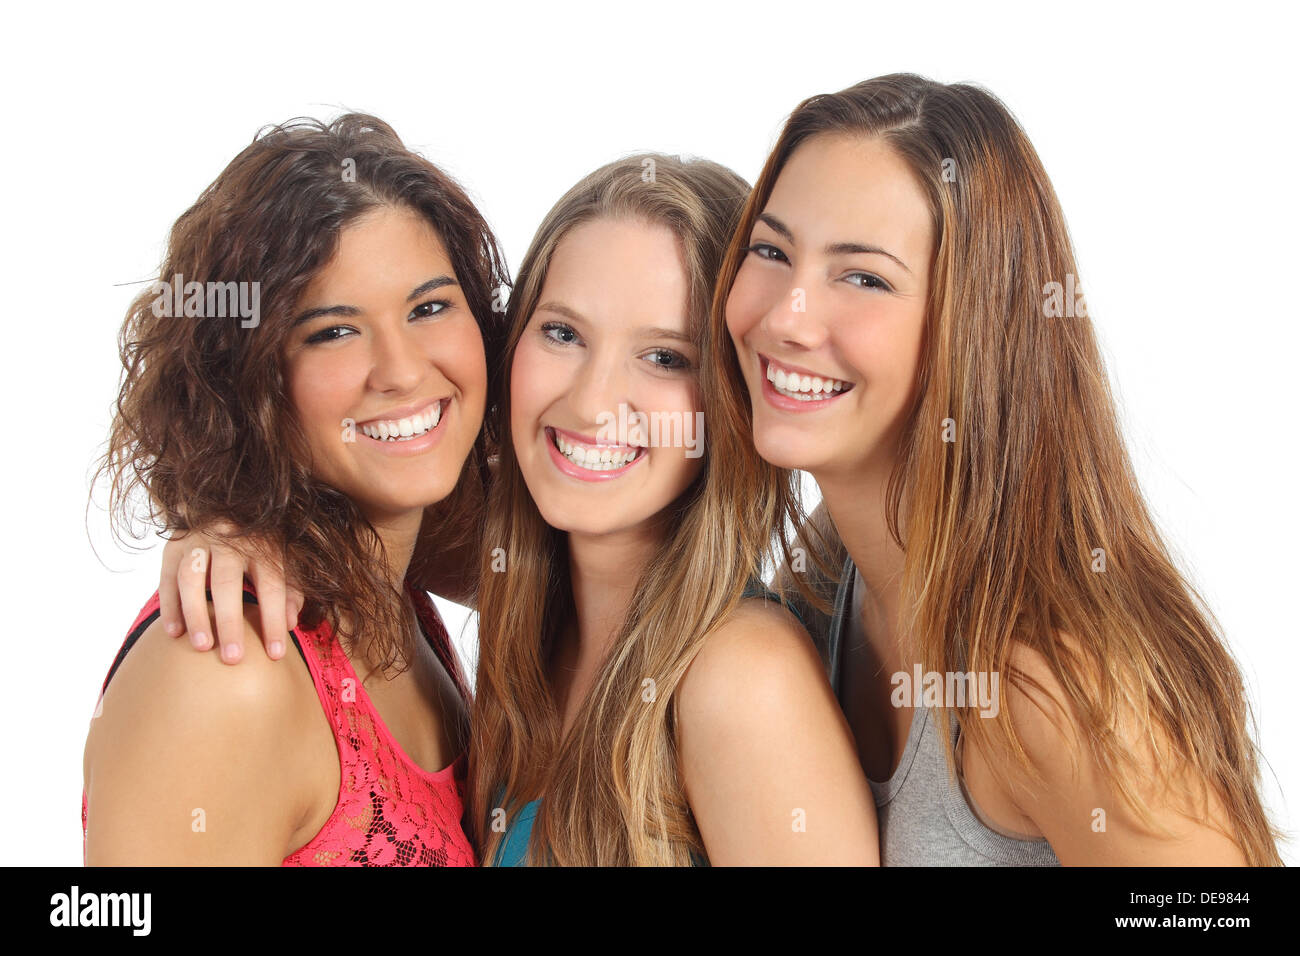 Groupe de trois femmes riant et looking at camera isolé sur fond blanc Banque D'Images